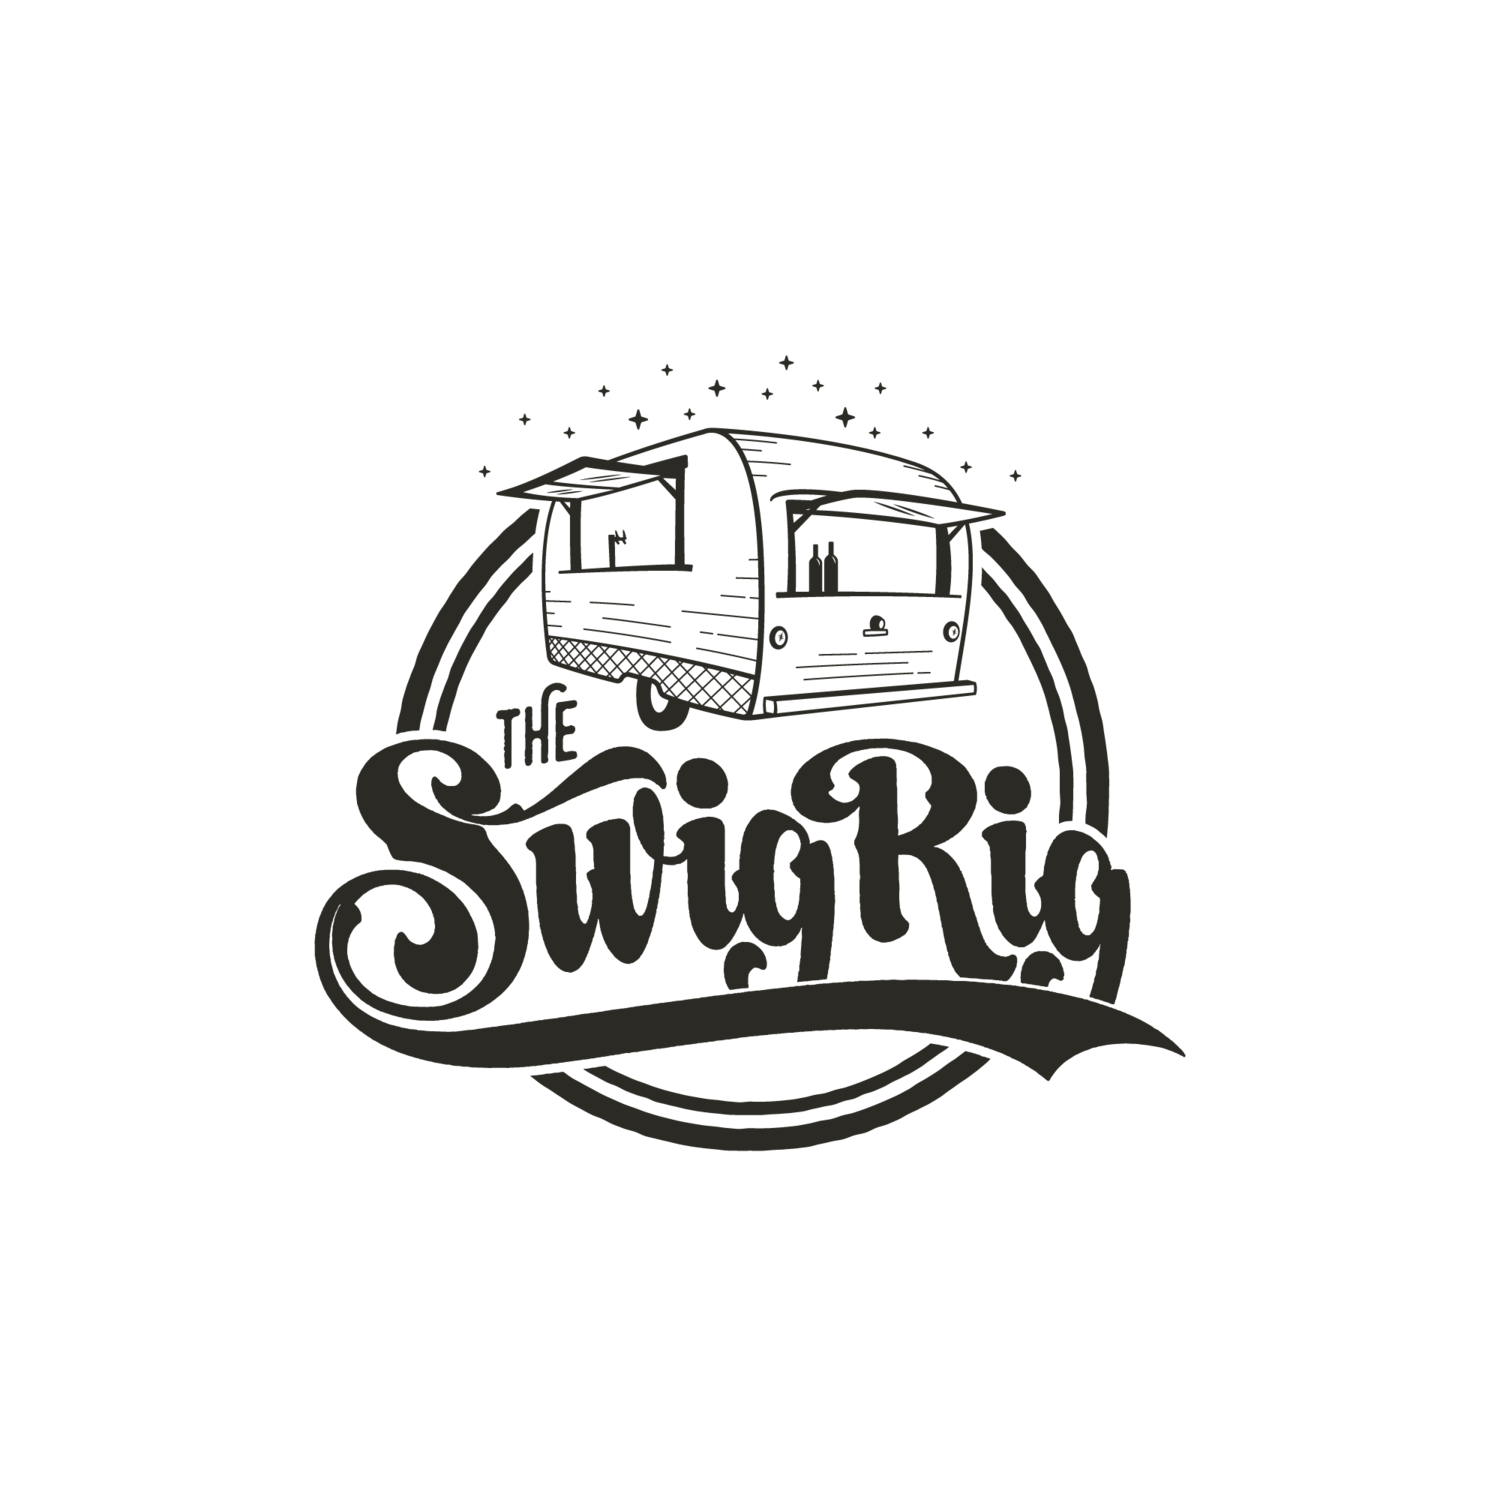 The Swig Rig | Wedding and Event Rental Services | Vintage Mobile Bar | Portland - Central Oregon